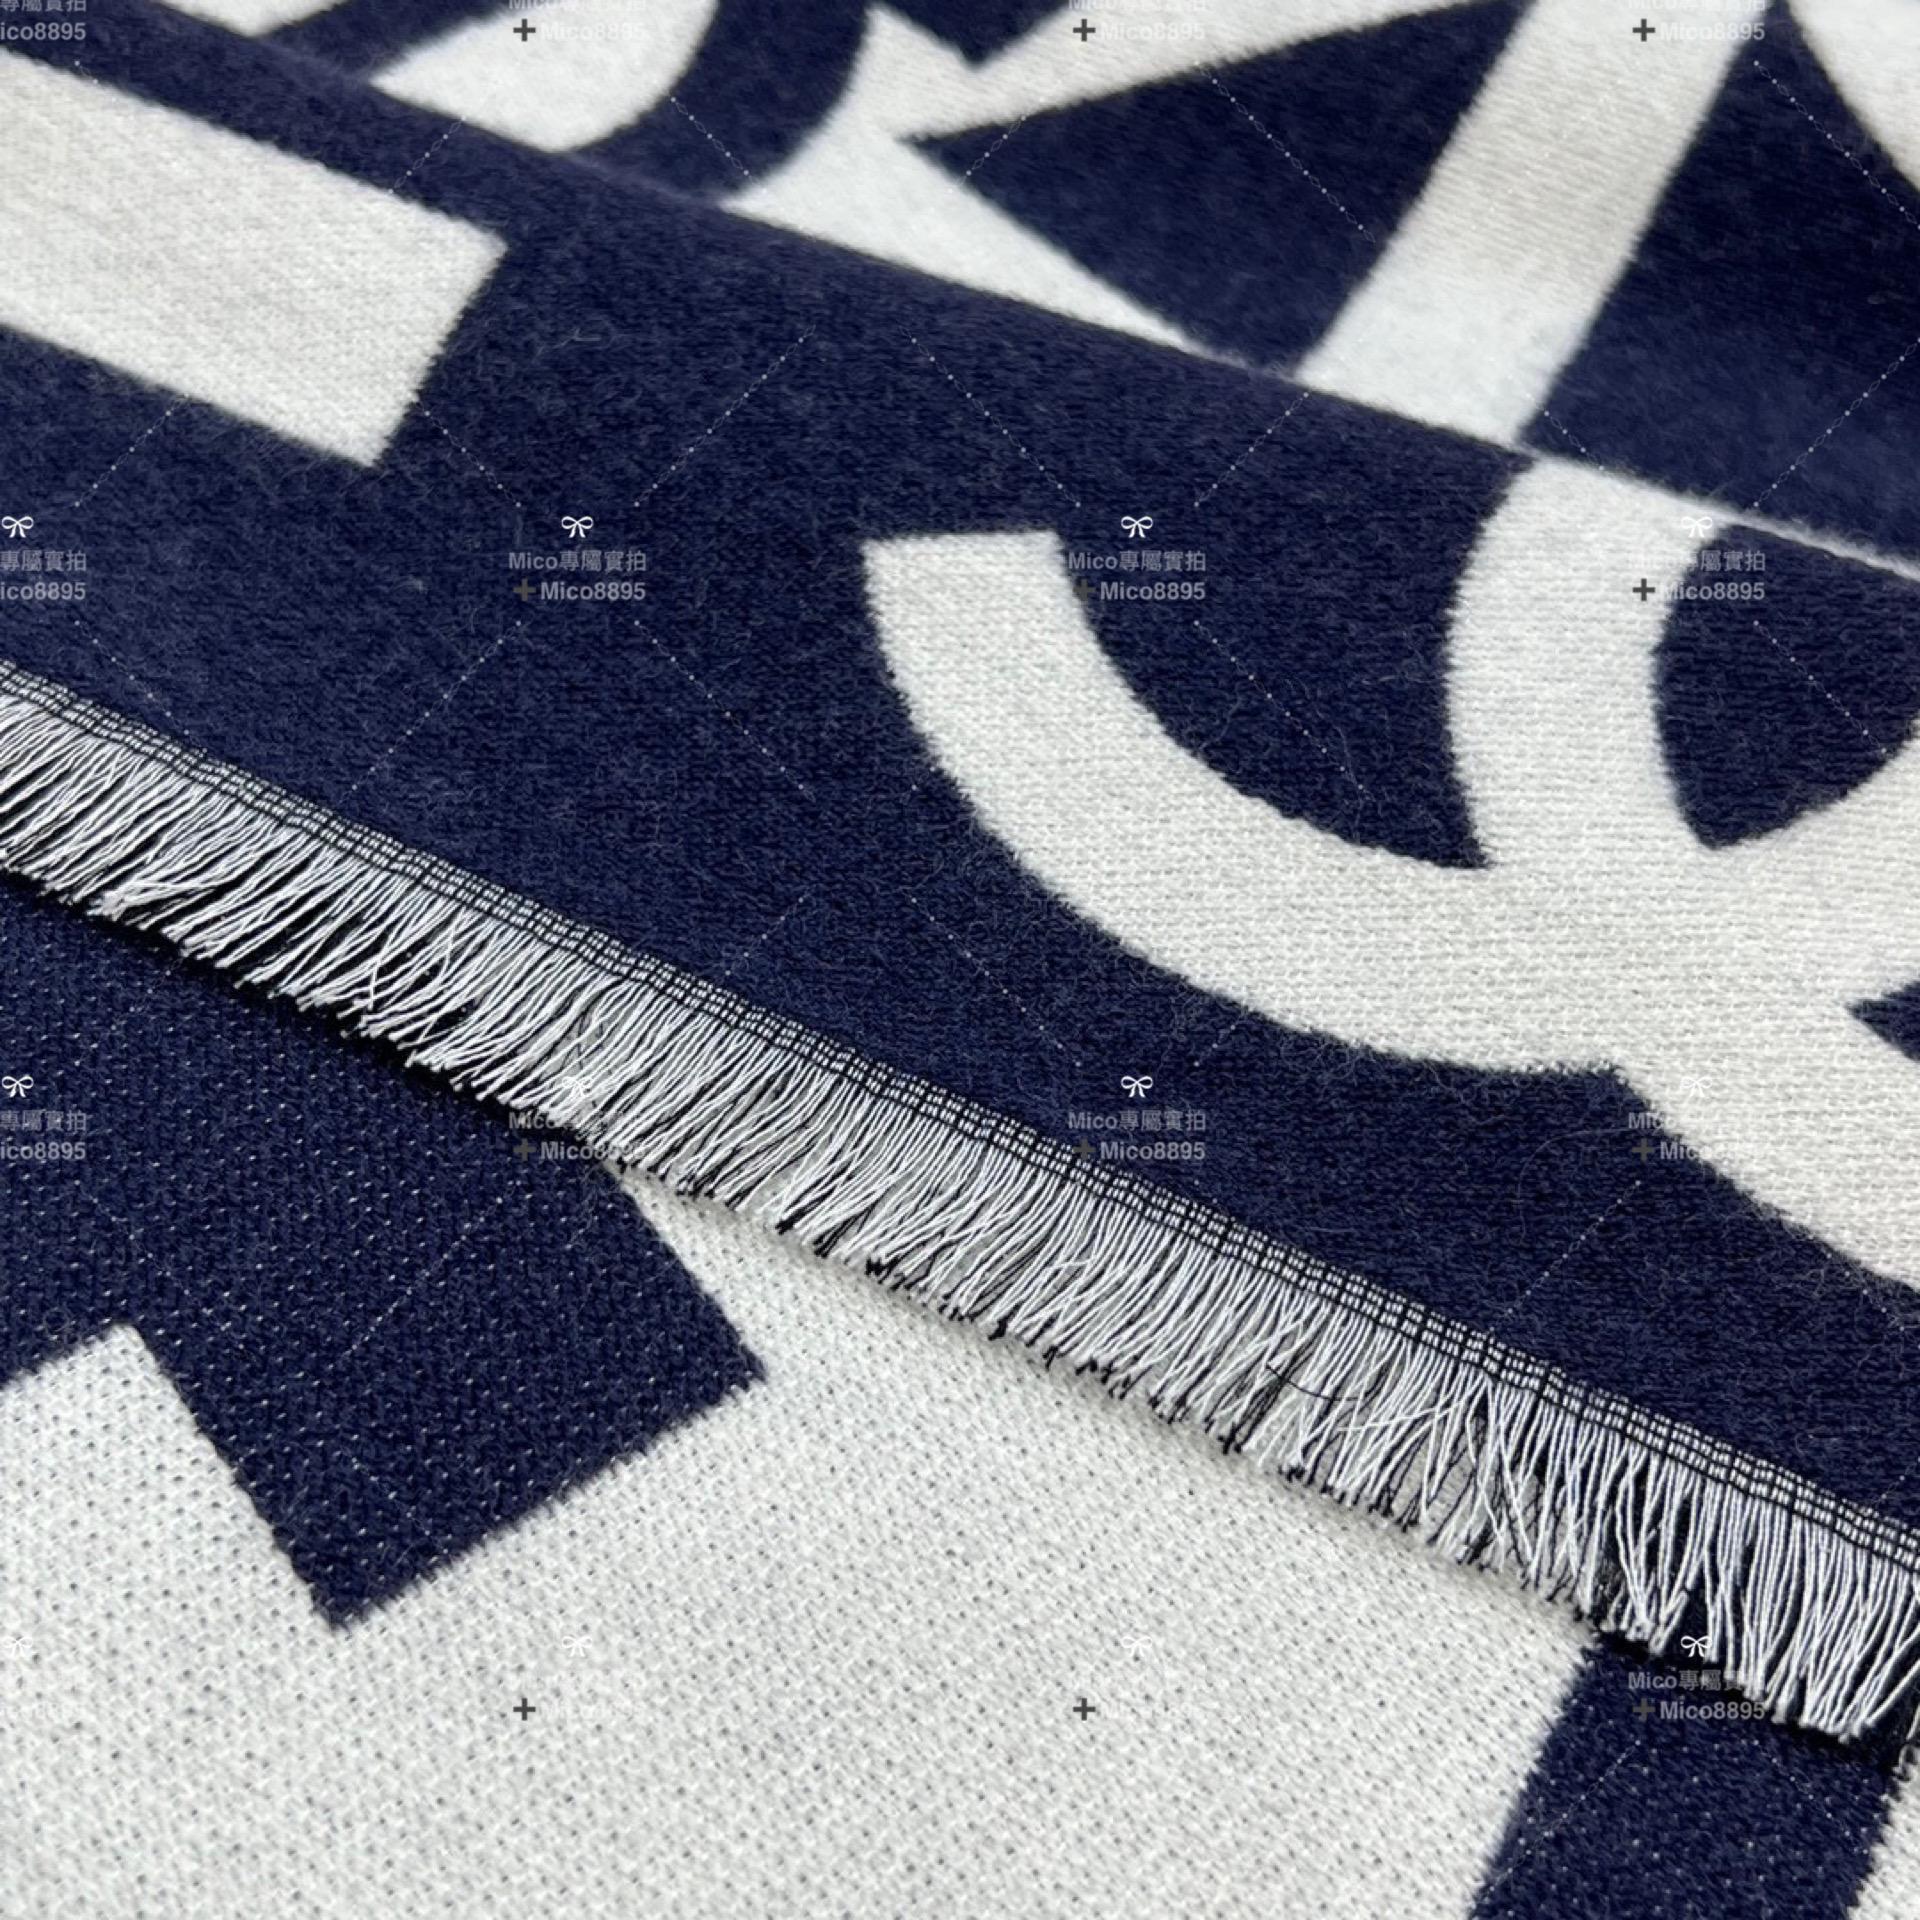 CHANEL 𝟮𝟮𝐁 冬季圍巾 小香印象字體圍巾 藍x米白 𝐒𝐢𝐳𝐞:204𝐱43cm